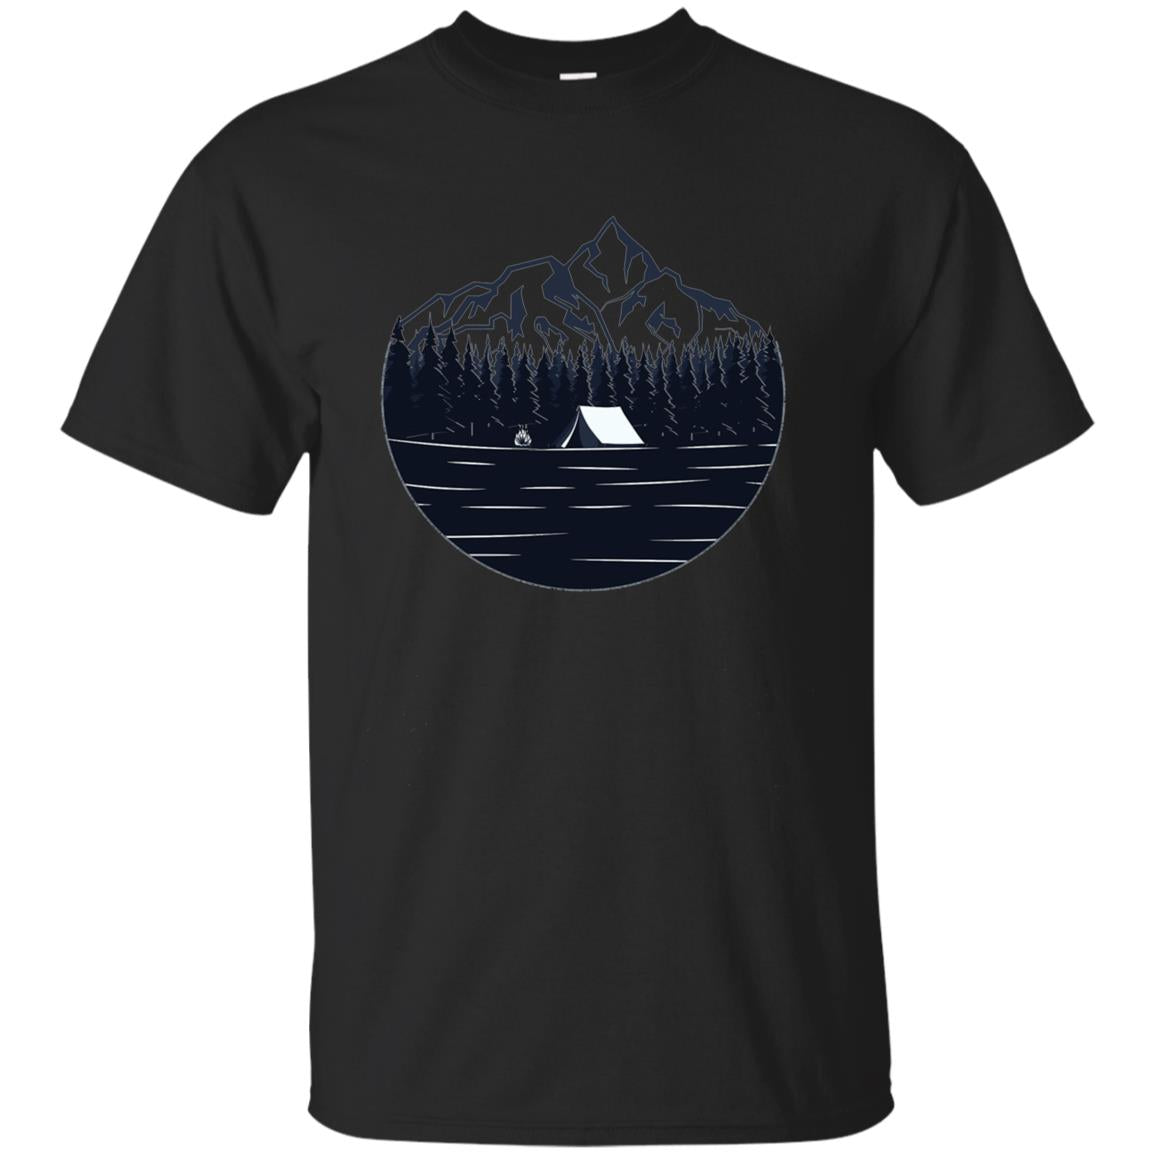 Camping Shirt - Outdoor Wilderness Shirt